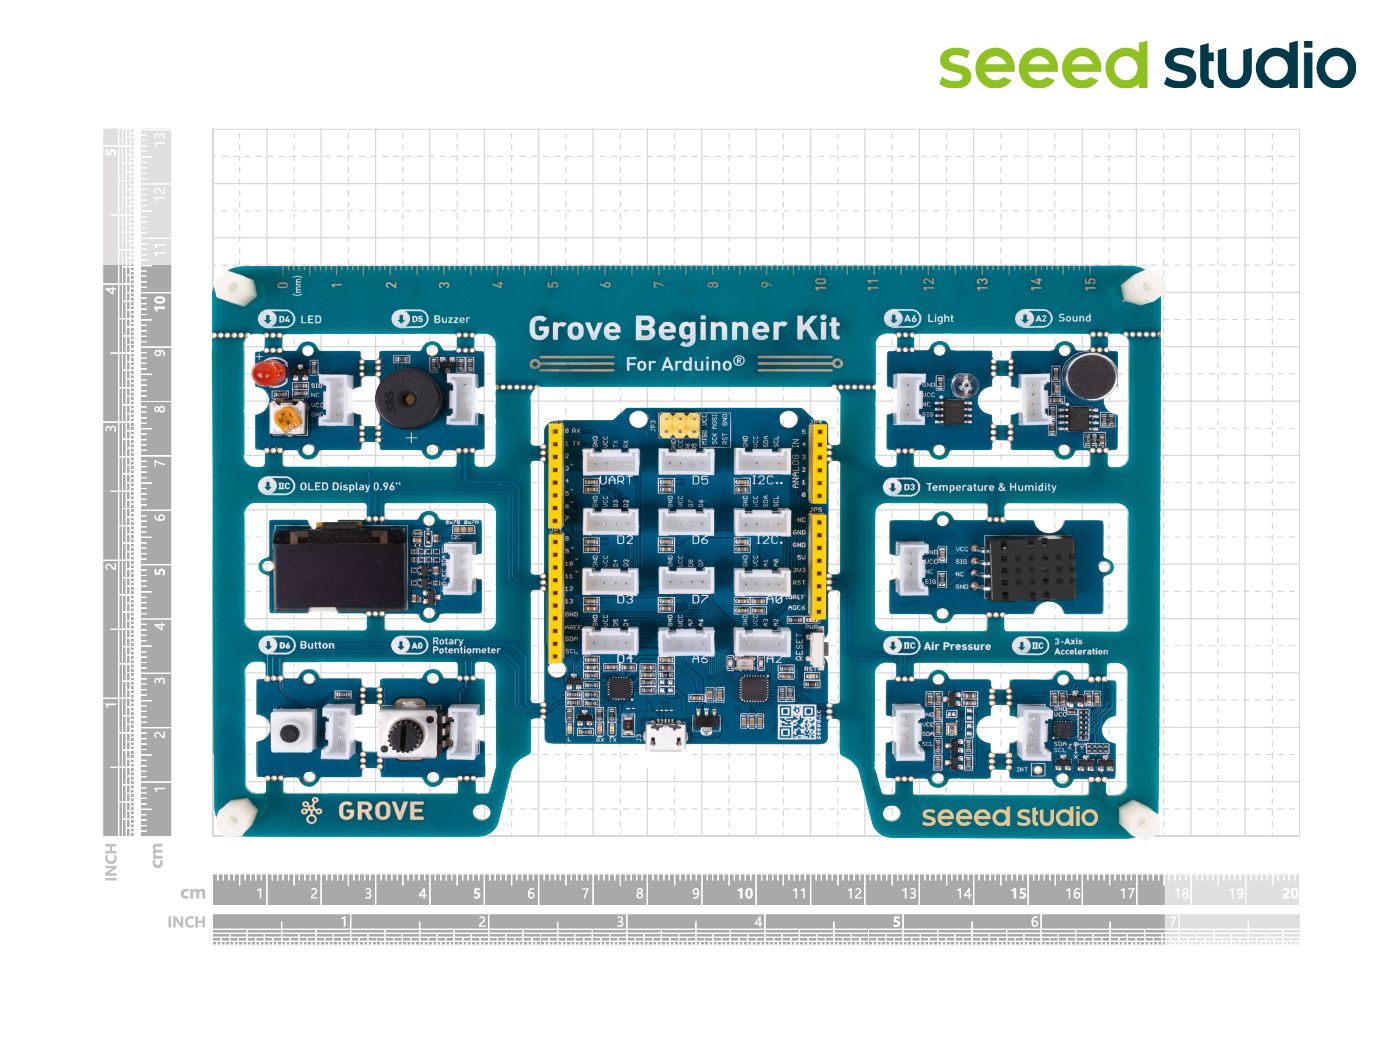 Acquista online il kit Grove per principianti di Arduino a basso